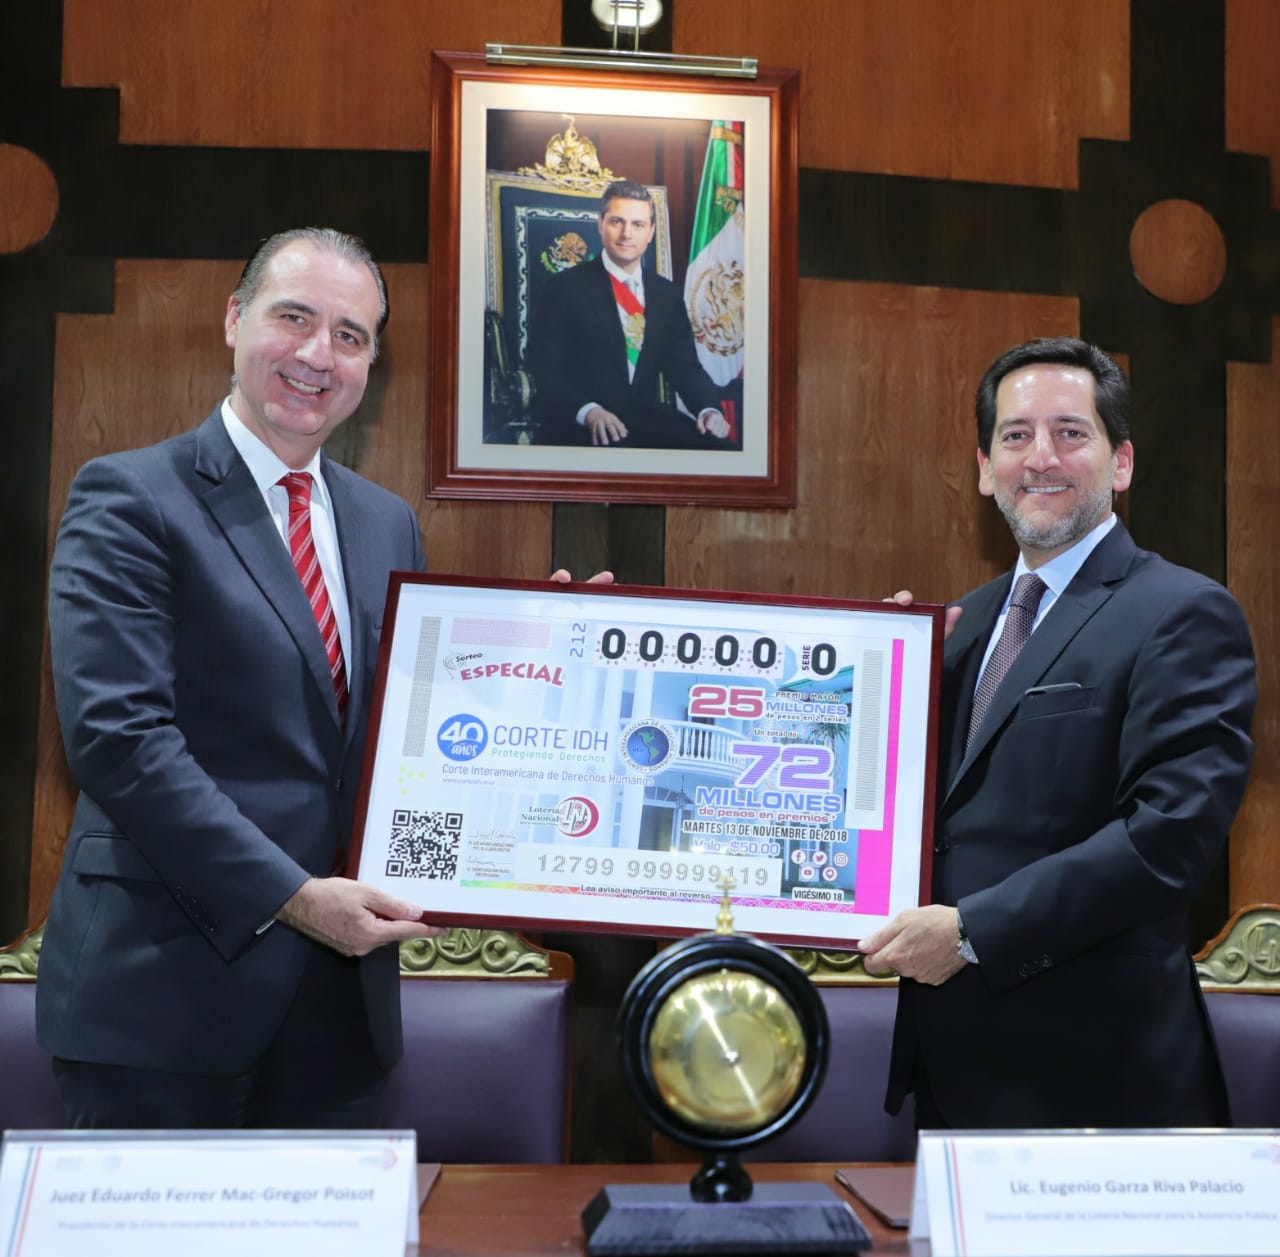  Fotografía donde posan con el billete del Sorteo Especial, de izquierda a derecha: Eduardo Ferrer Mac-Gregor Poisot y Eugenio Garza Riva Palacio.